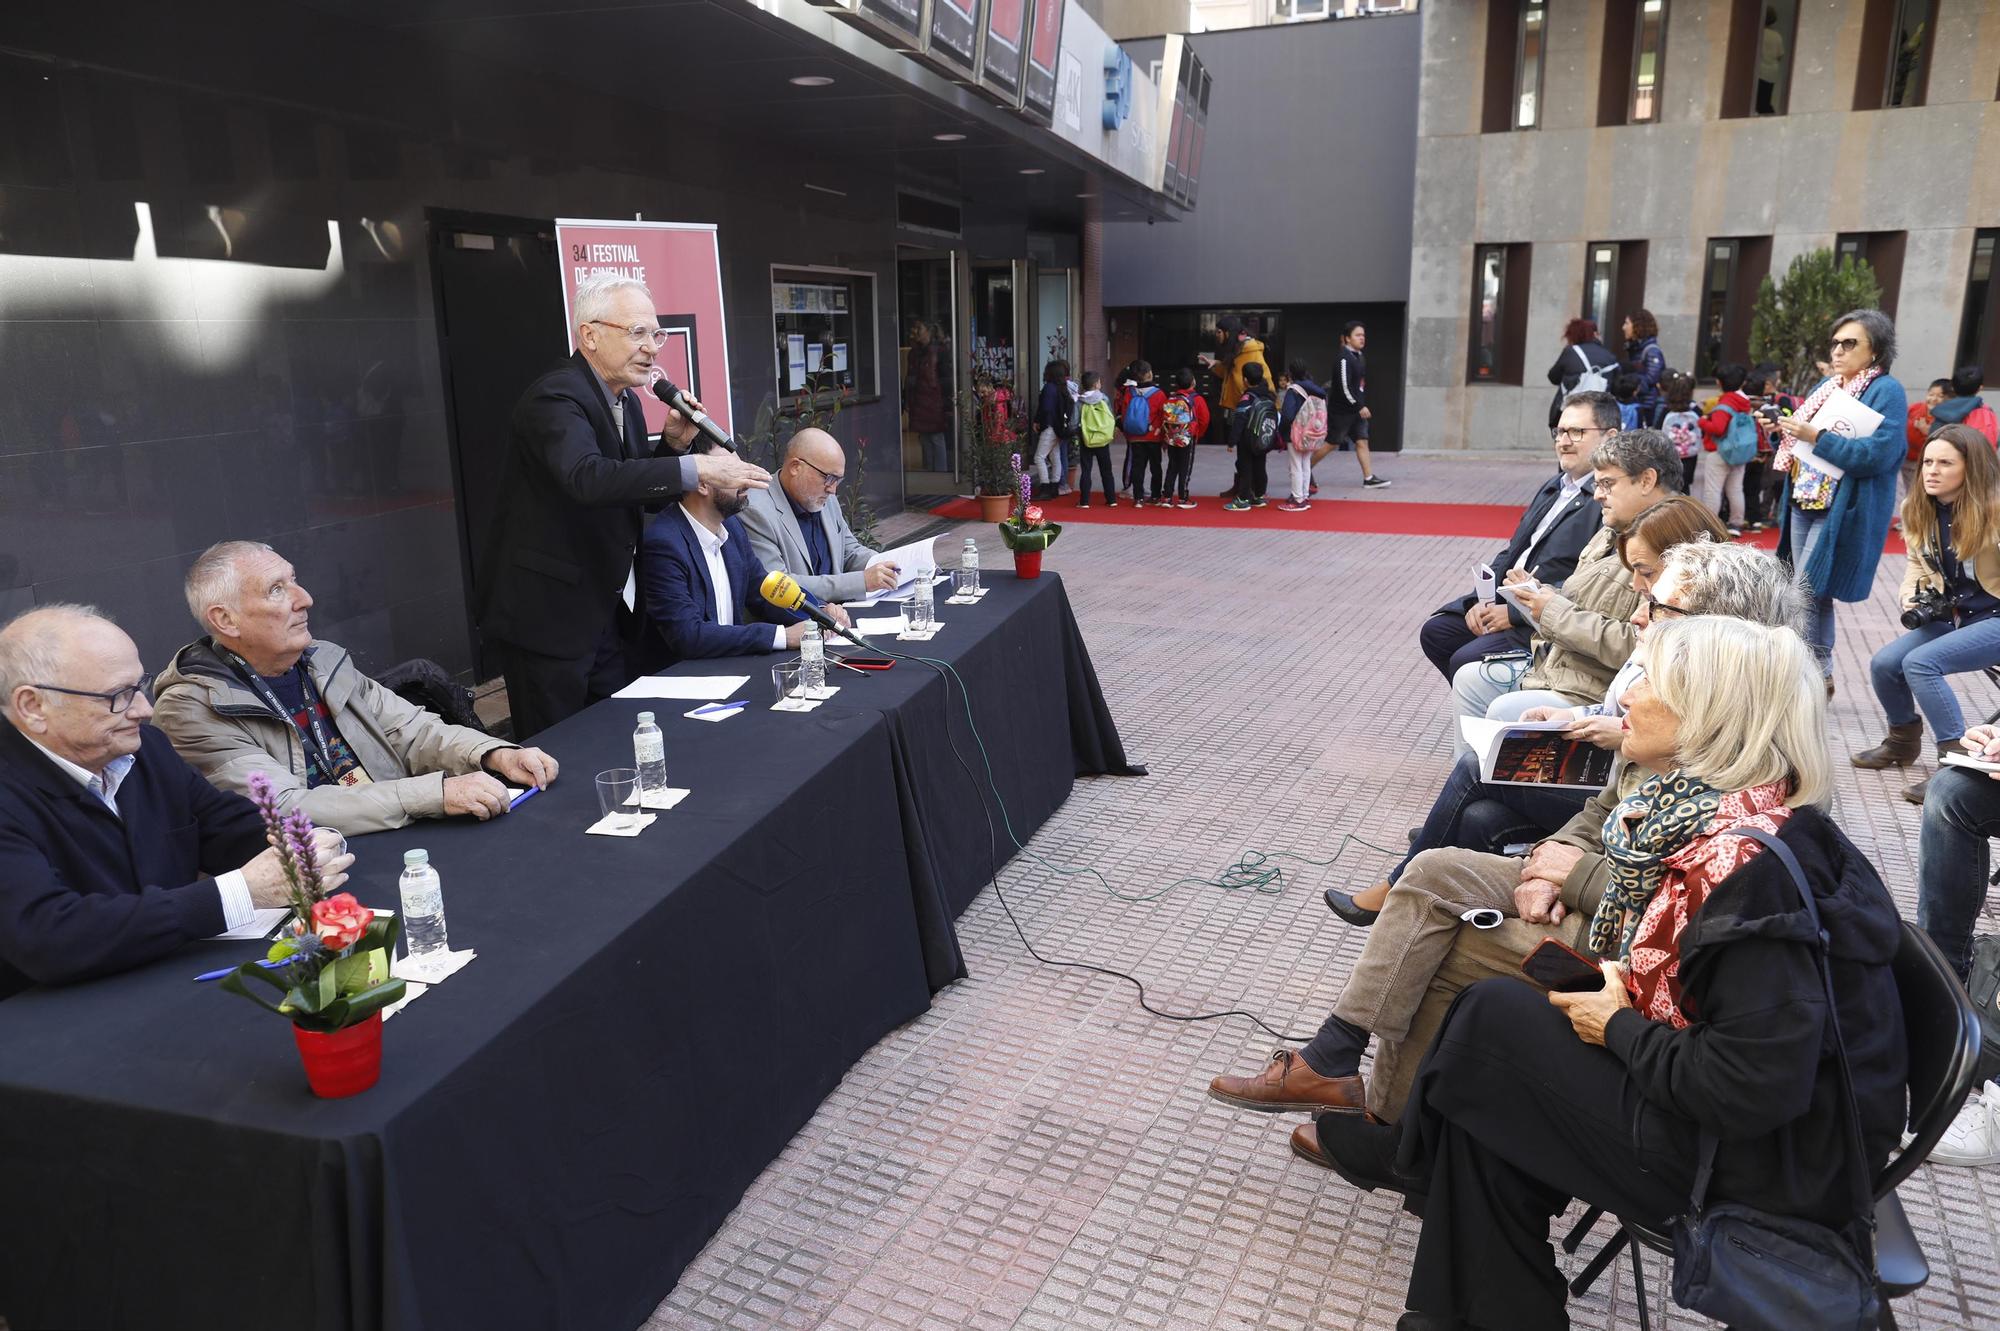 El Girona Film Festival reobre els cinemes Albèniz Plaça un any després